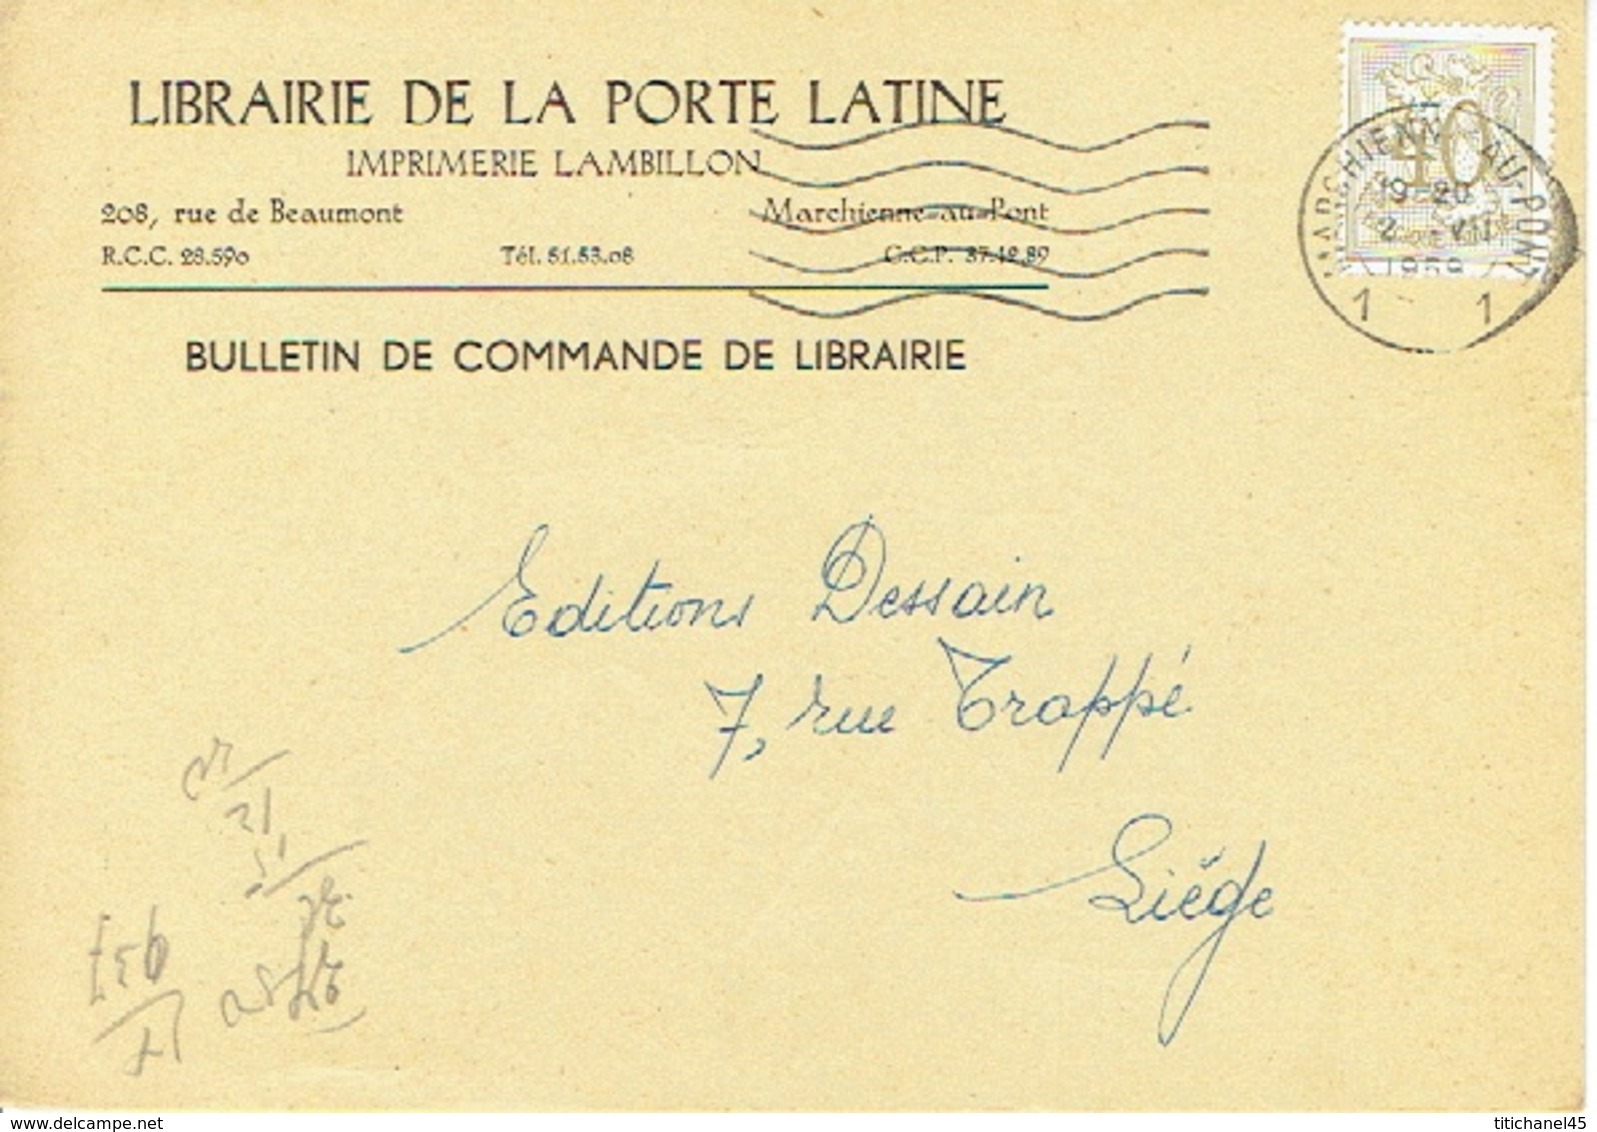 CP Publicitaire MARCHIENNE-AU-PONT 1959 - LIBRAIRIE DE LA PORTE LATINE - Imprimerie LAMBILLON - Charleroi